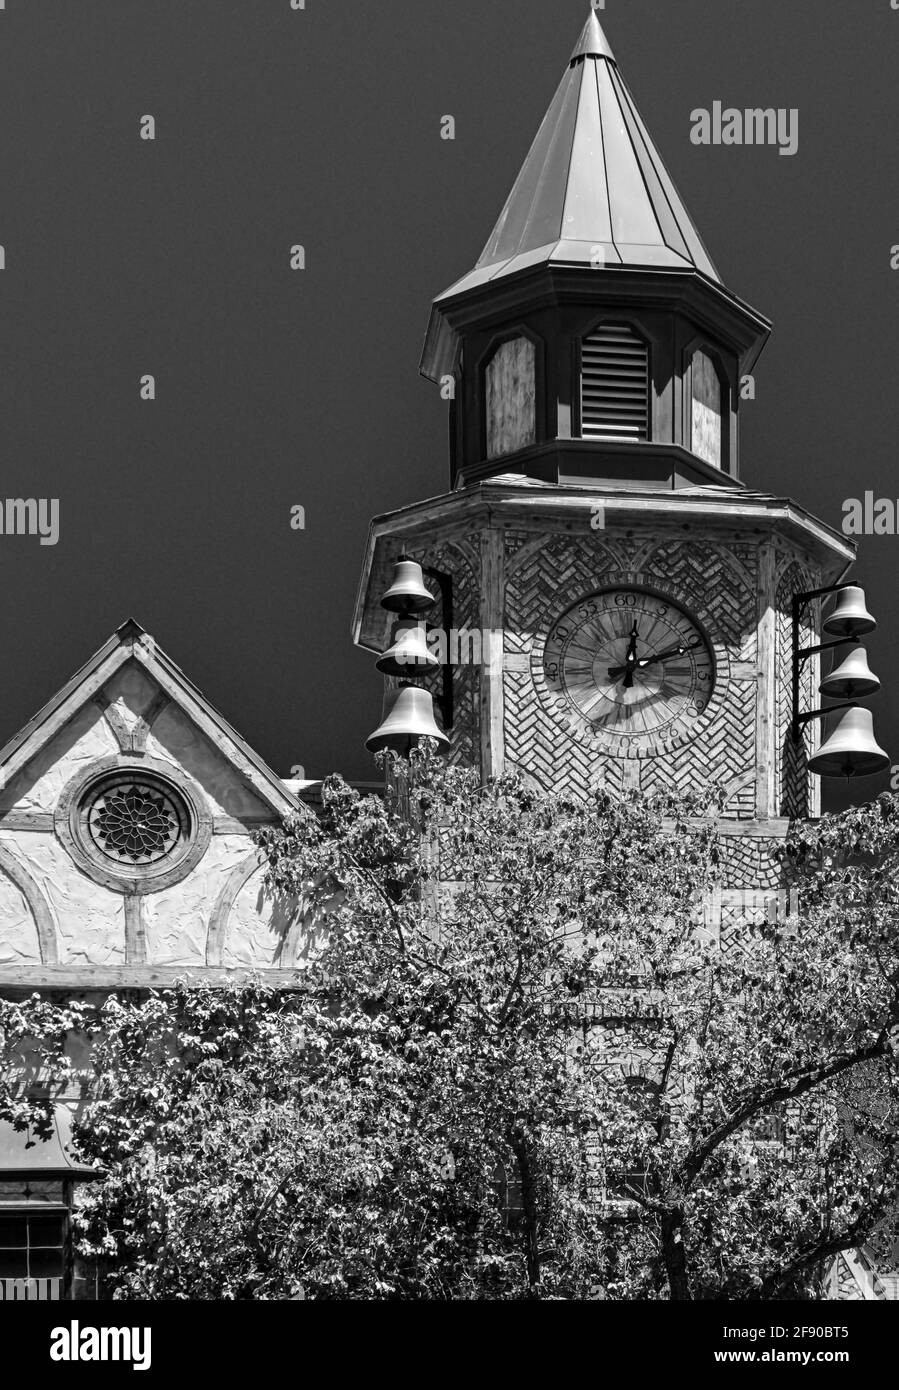 Detalles arquitectónicos de whimsey y textura en blanco y negro de la Torre del Reloj Old Mill House en Solvang, CA, Estados Unidos Foto de stock